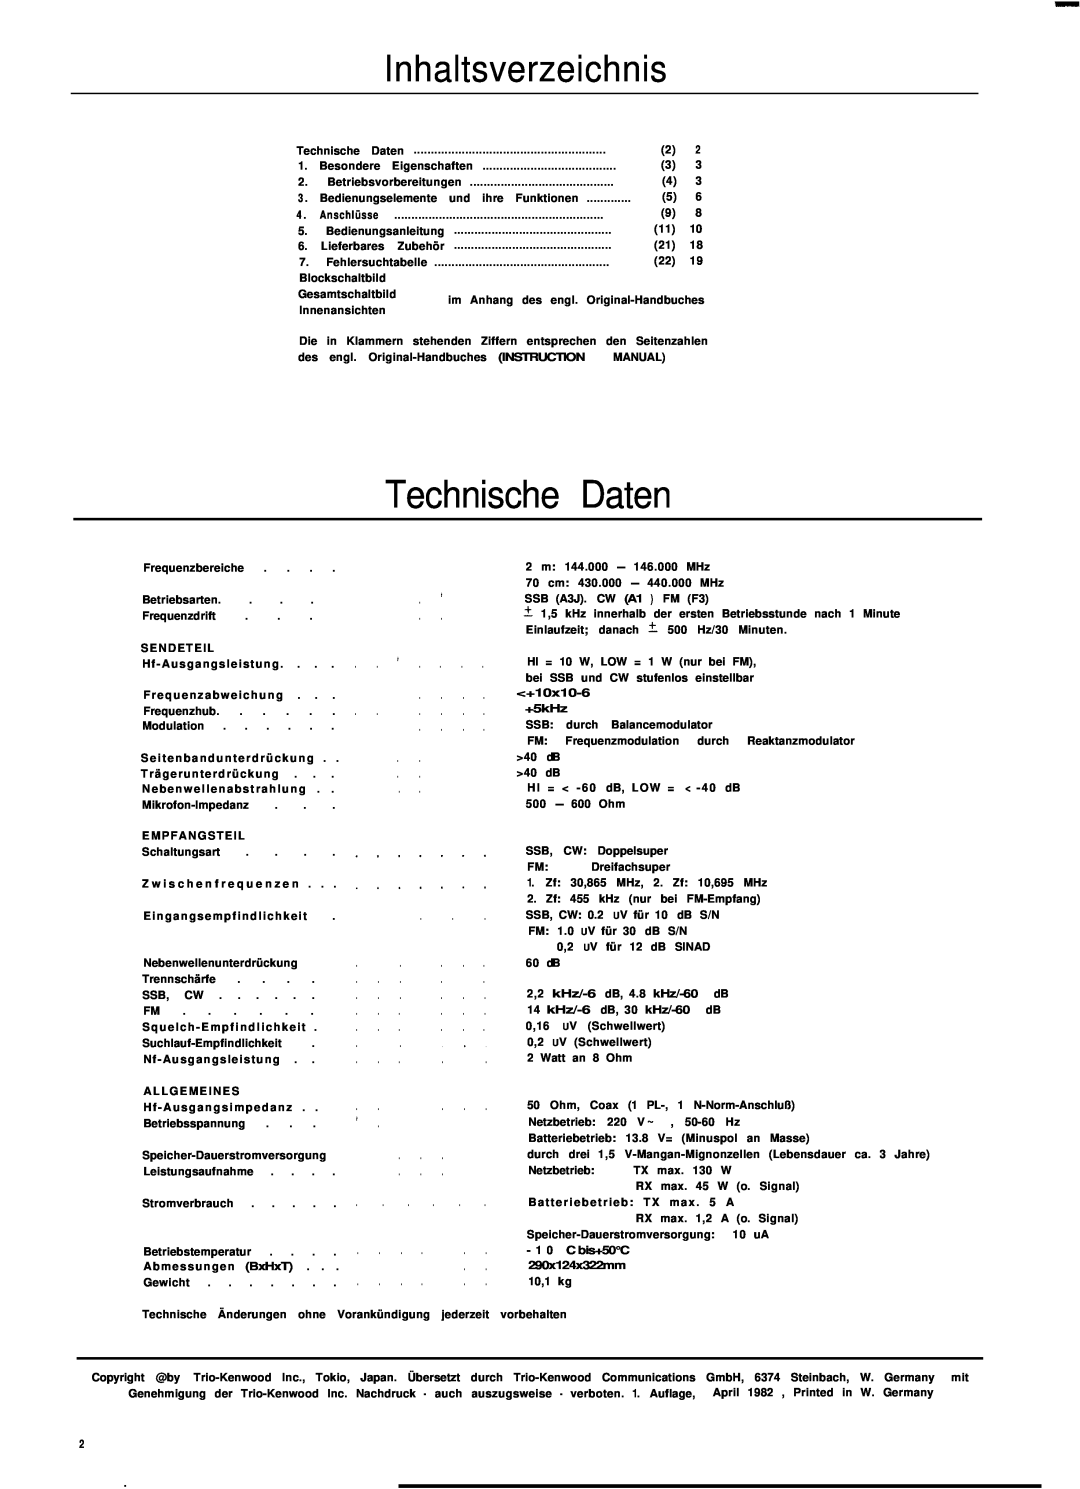 Kenwood TS-780 manual Technische Daten, Inhaltsverzeichnis 